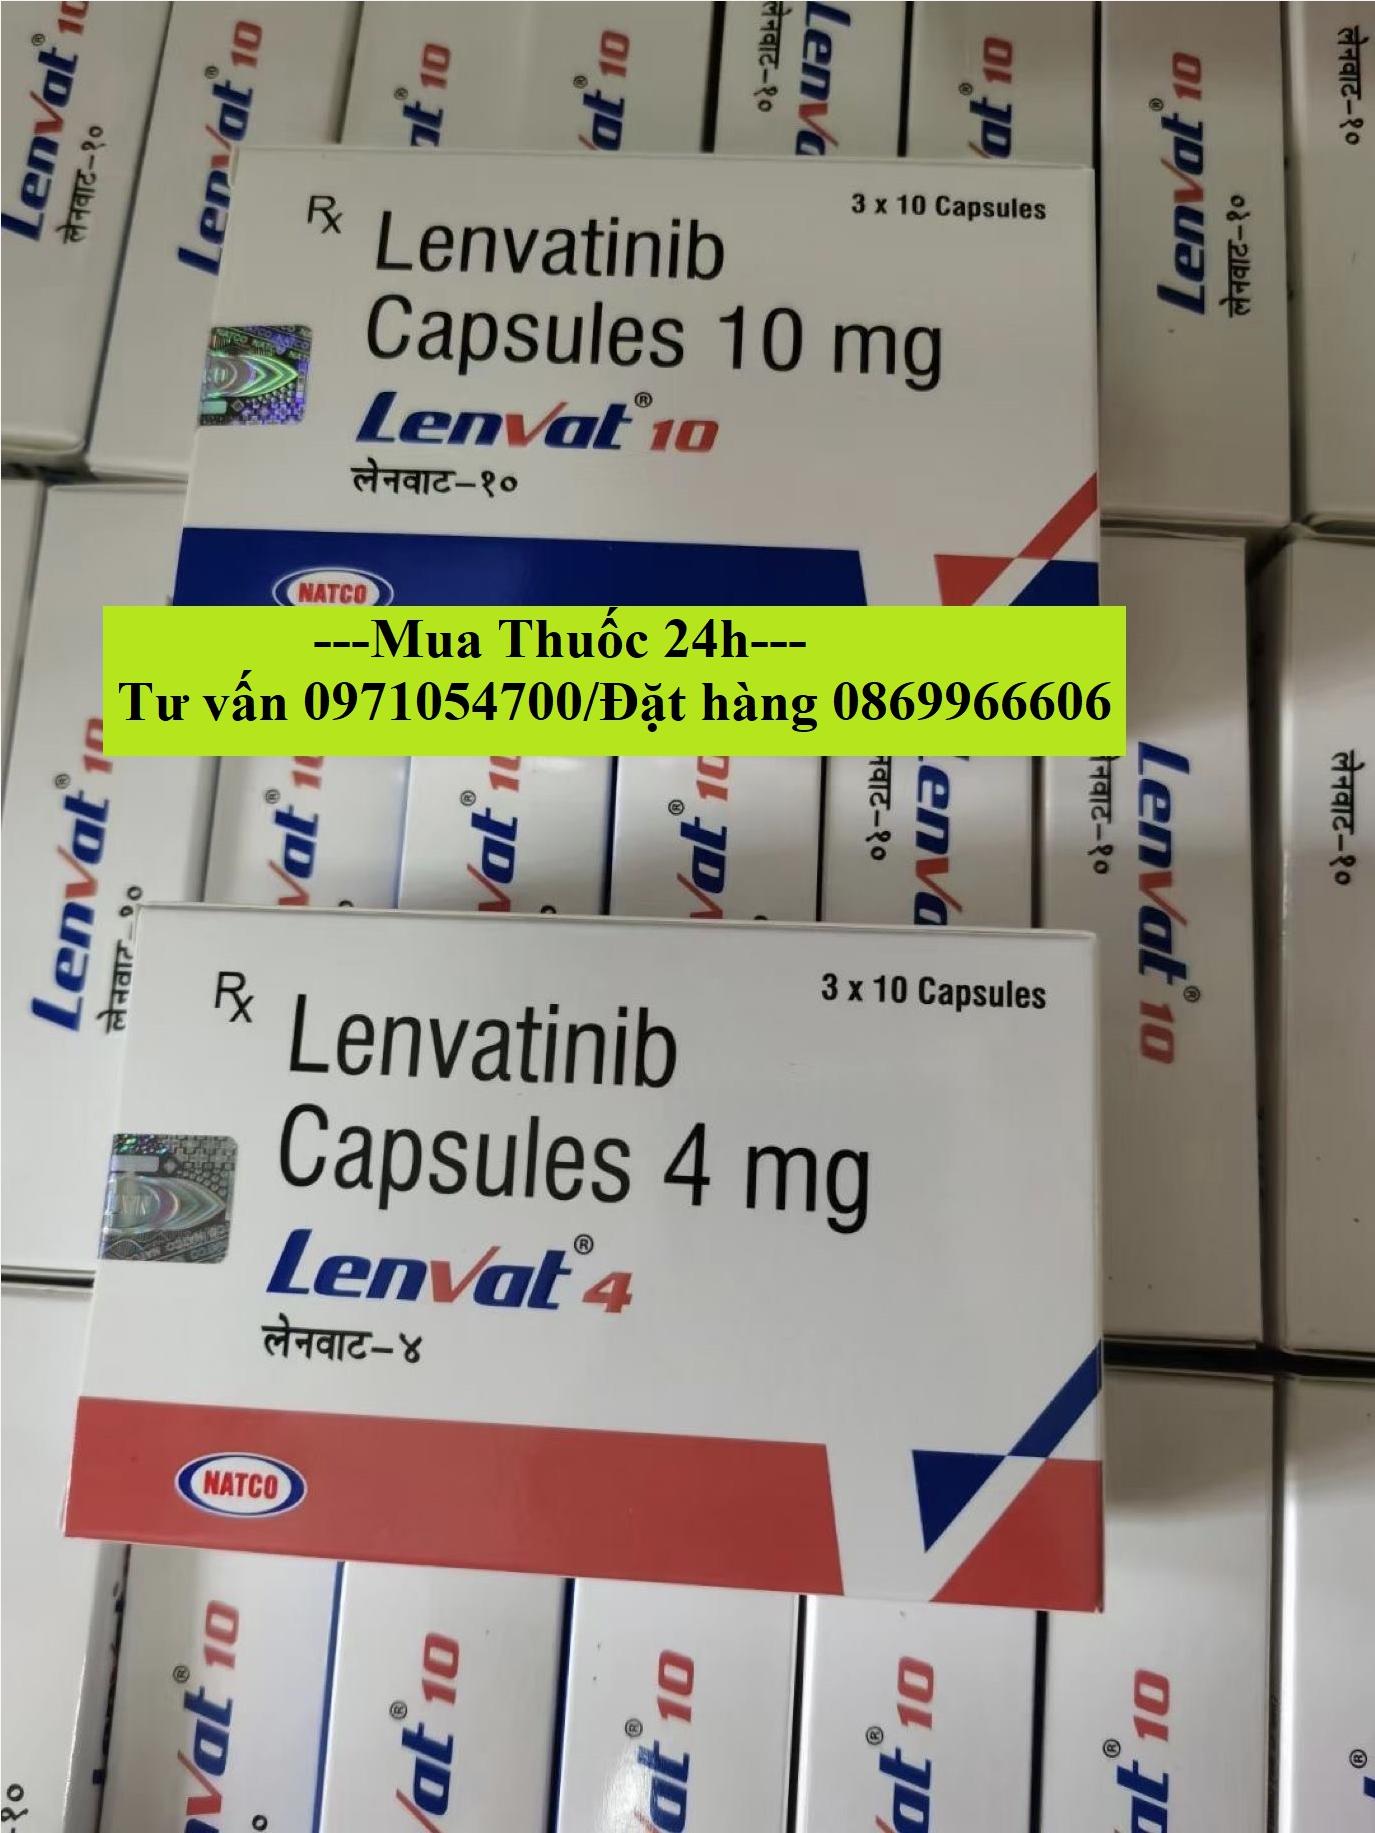 Thuốc Lenvat 10 Lenvatinib giá bao nhiêu mua ở đâu?